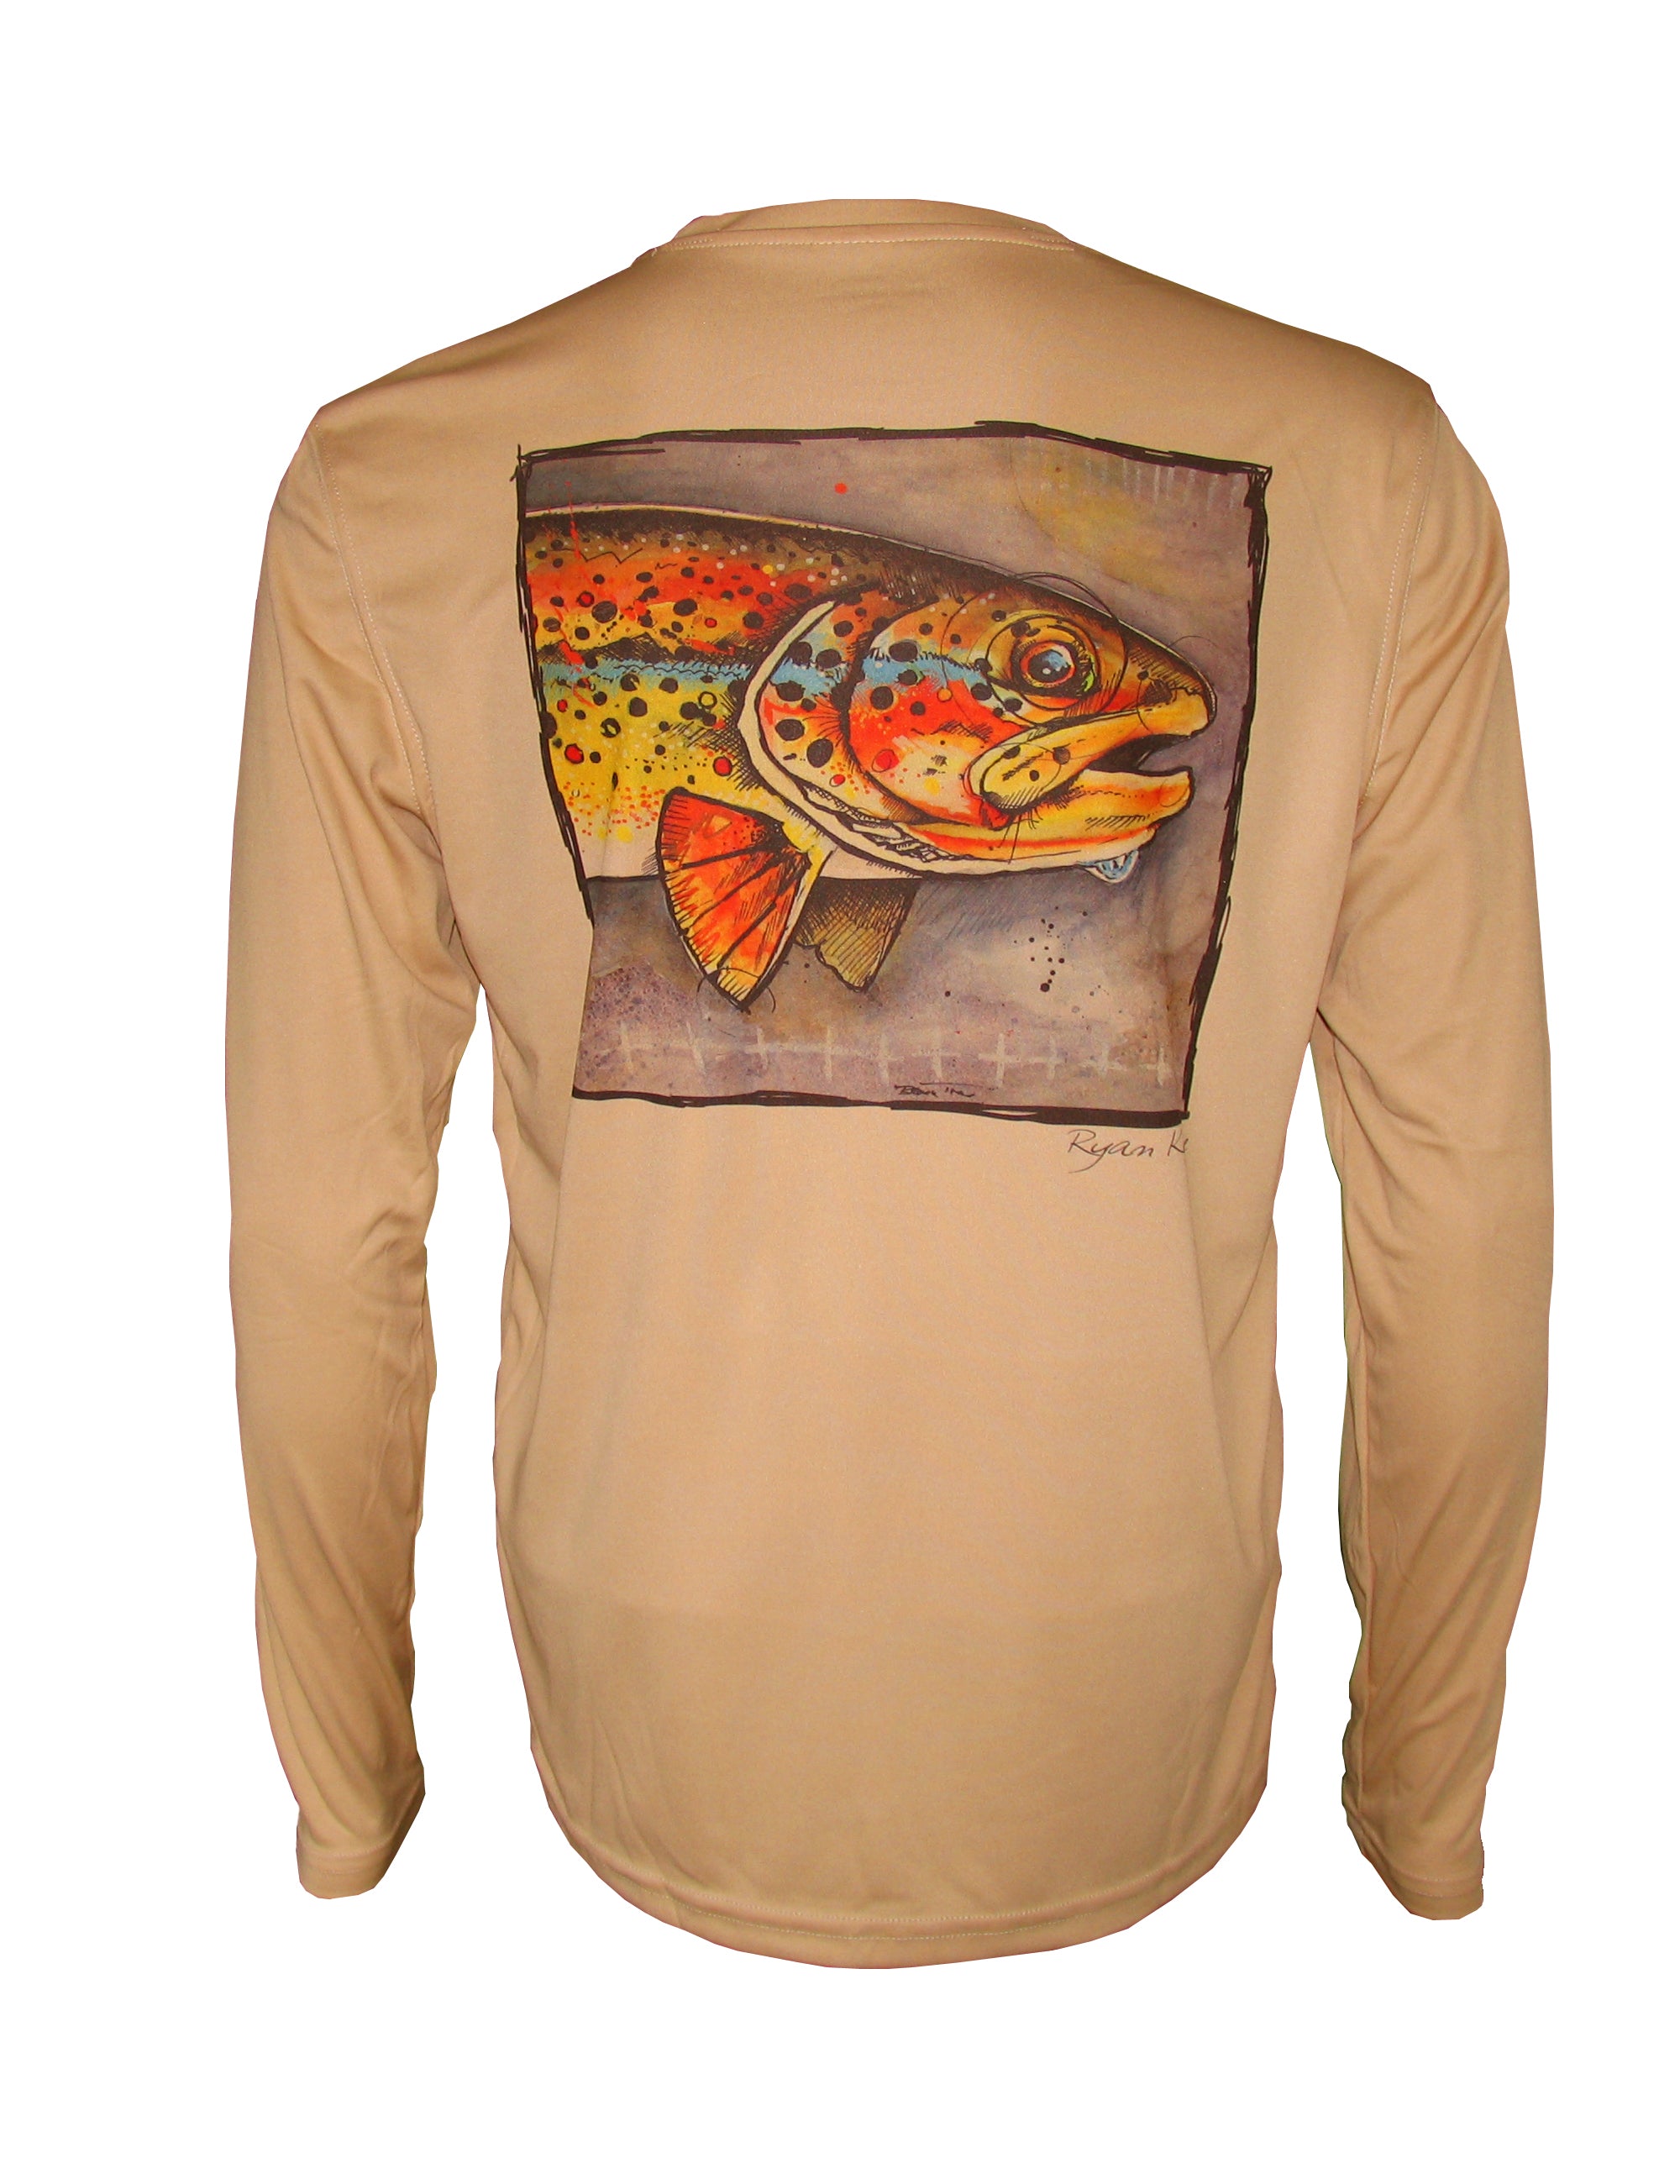 Long Sleeve Trout Fishing T-Shirts, Men's Fish Shirt